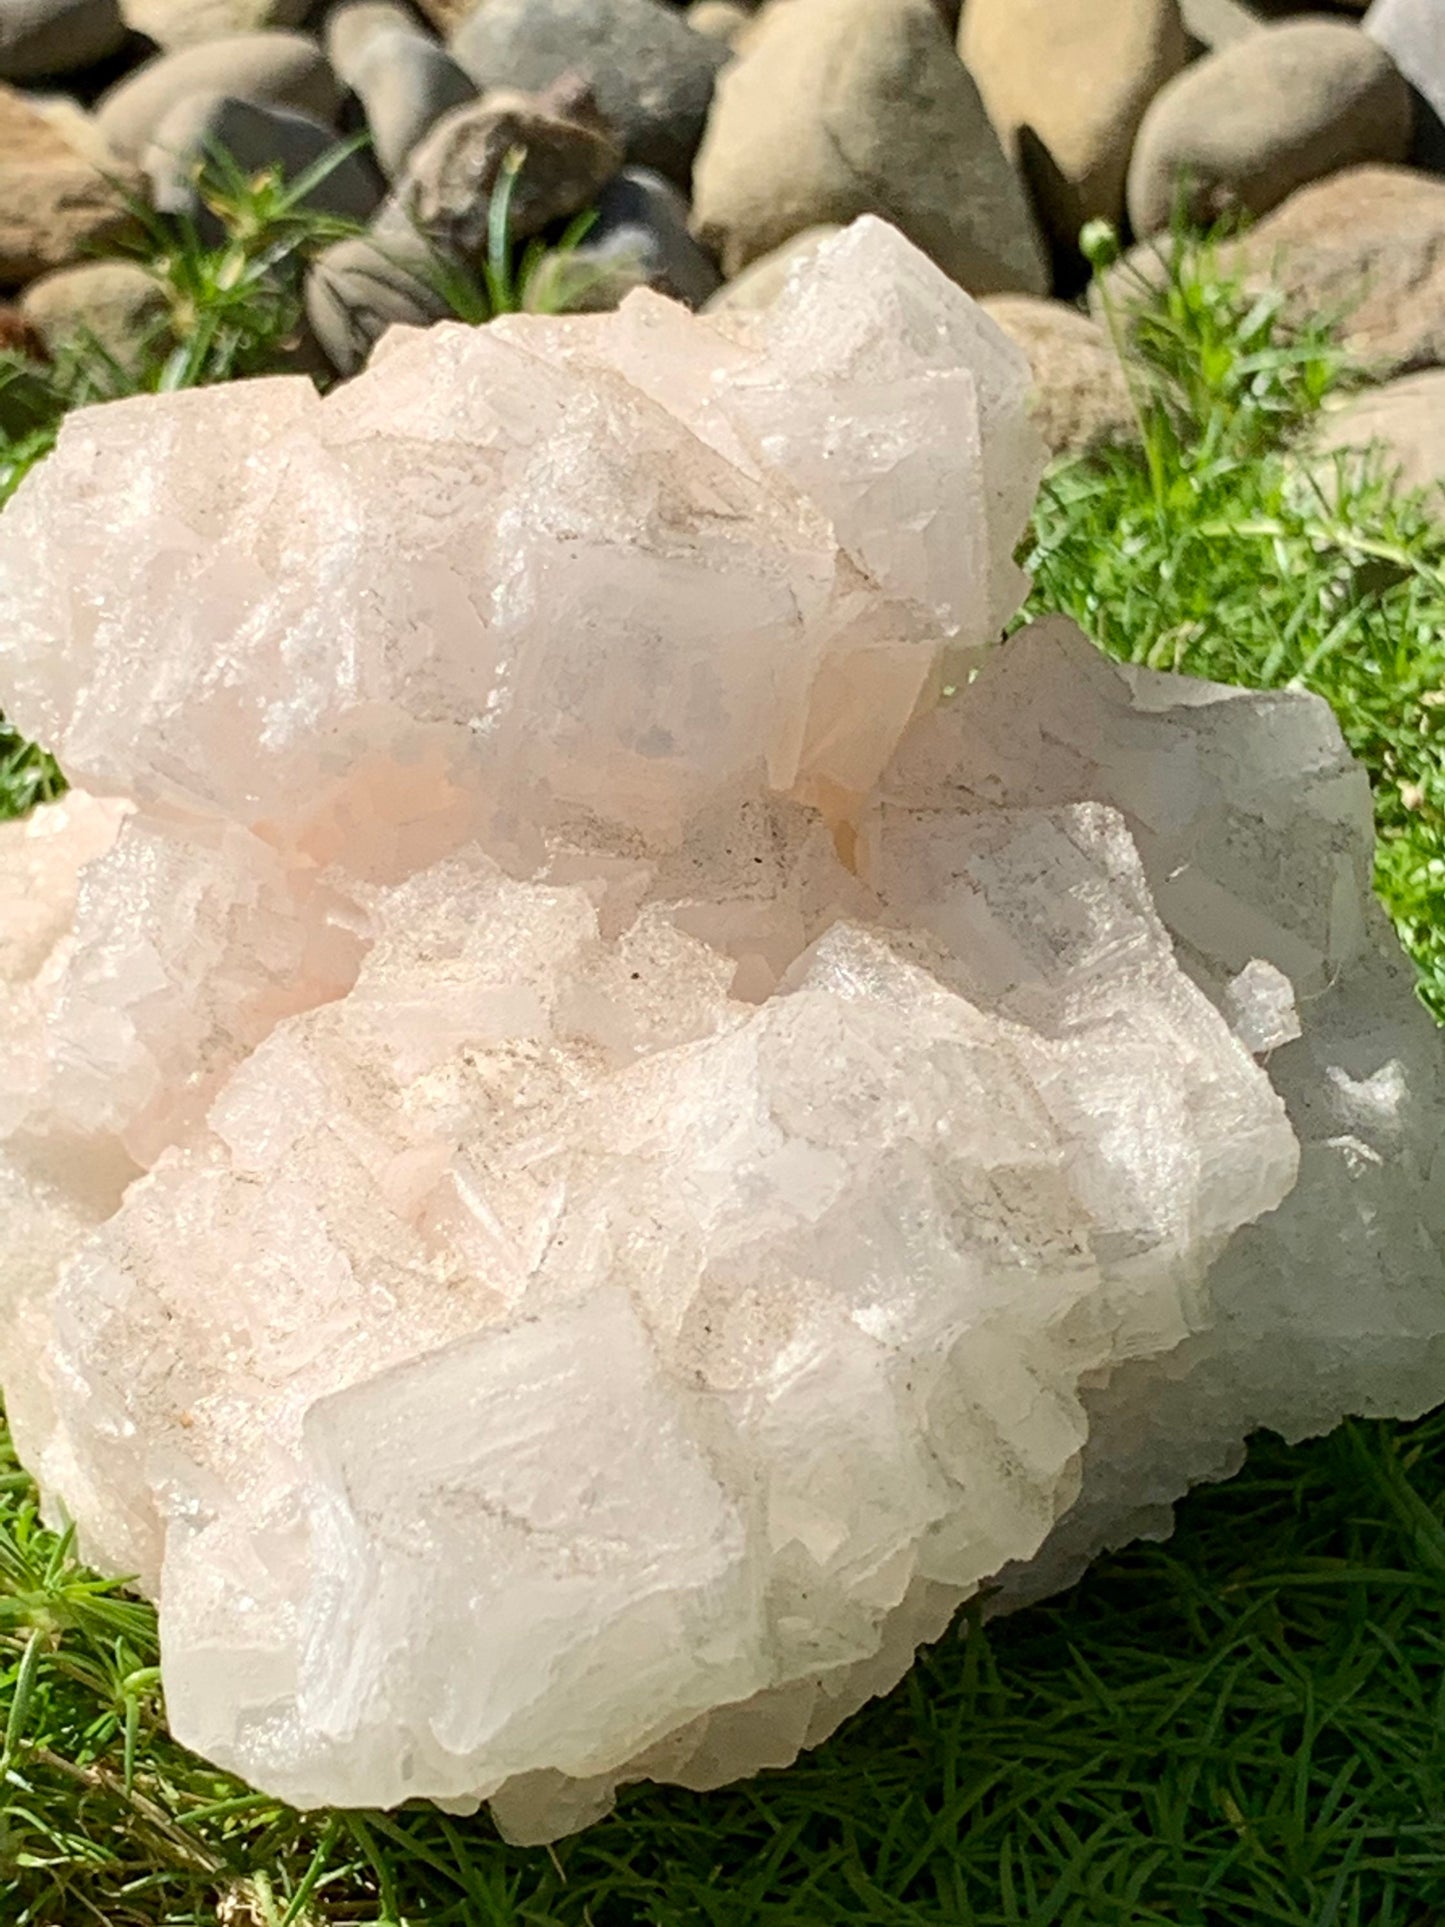 Pink Halite Large Salt Crystal Mineral Specimen